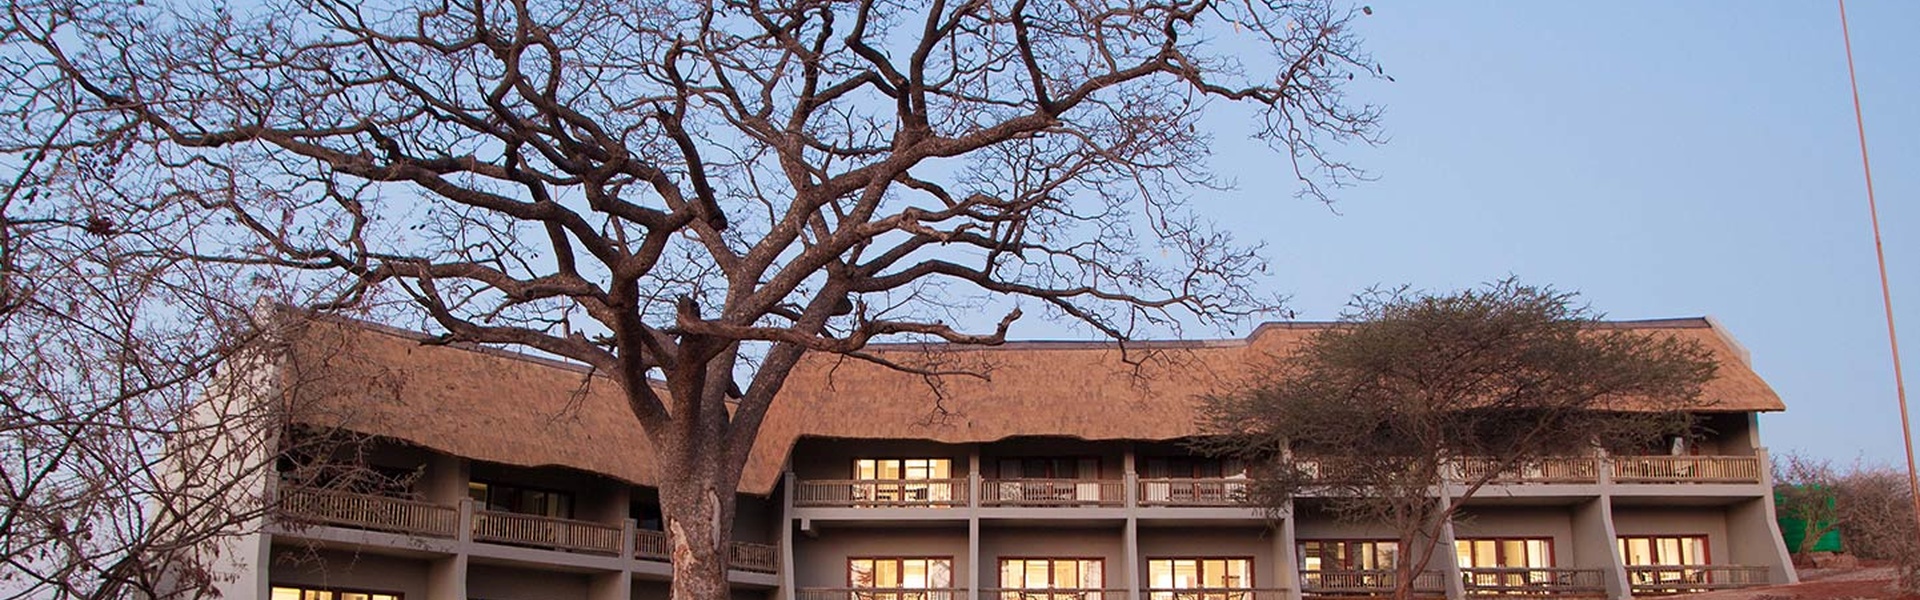 Dormez au Chobe bush lodge hotel au Botswana | Sous l'Acacia